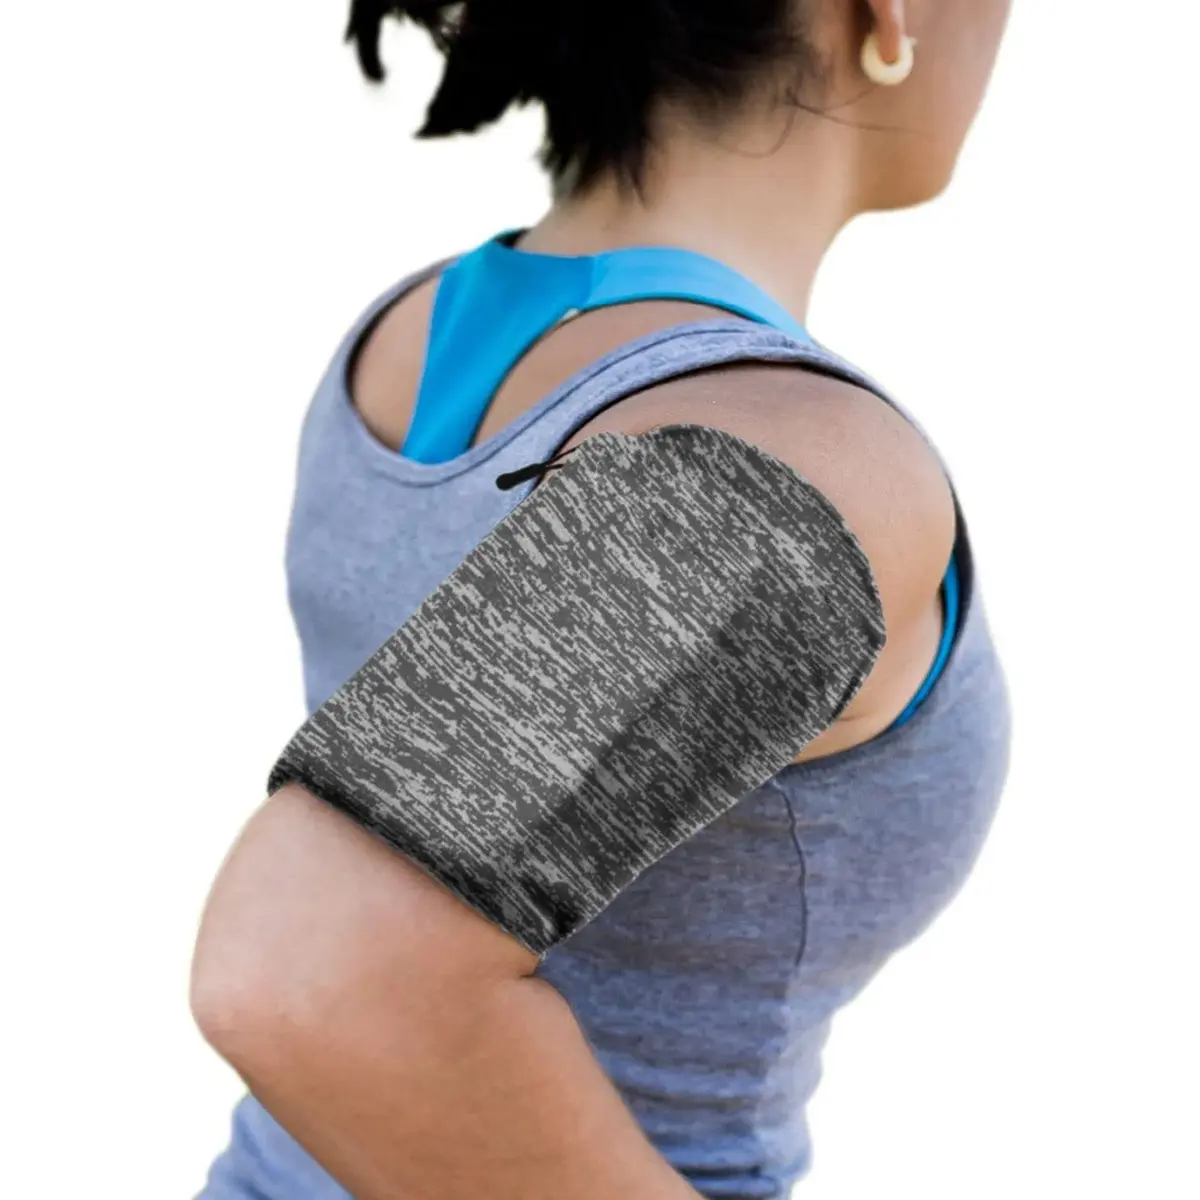 Toptan özel Logo Unisex spor spor kol çantası telefon kol bandı kol yüksek kalite koşu spor kol bandı askısı tutucu kılıfı